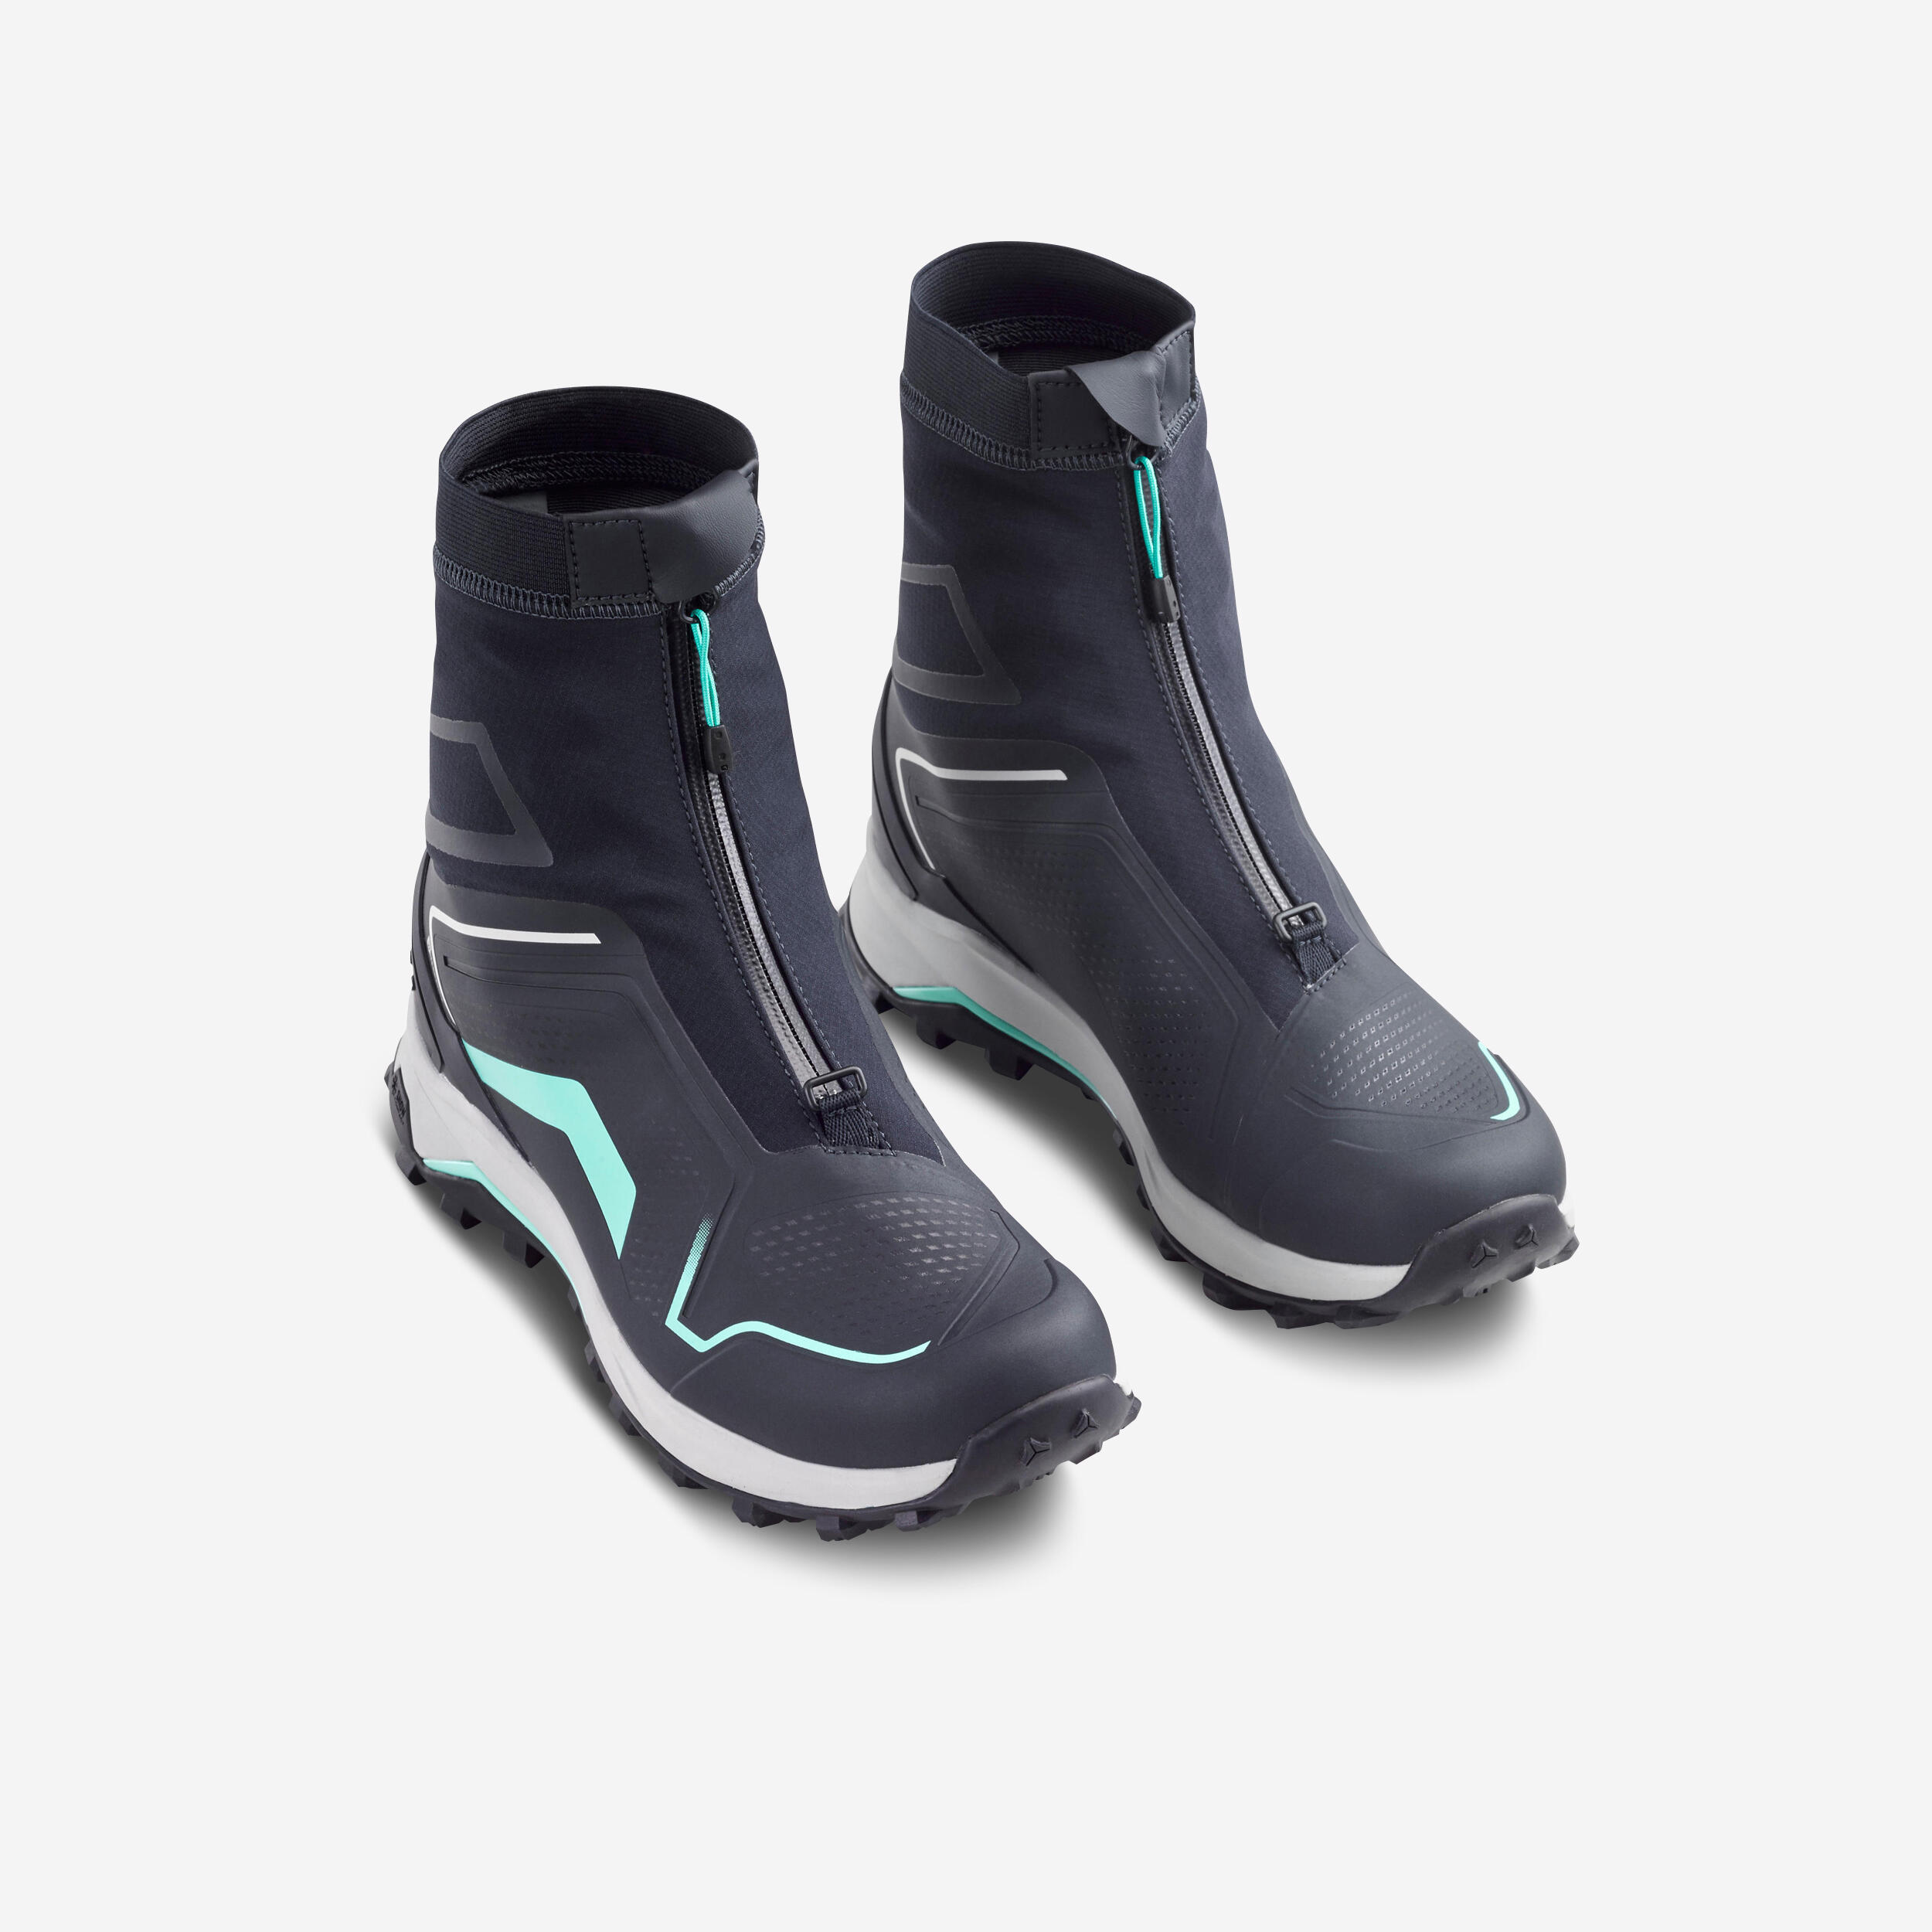 QUECHUA Women's warm and waterproof hiking boots - SH900 PRO MOUNTAIN  